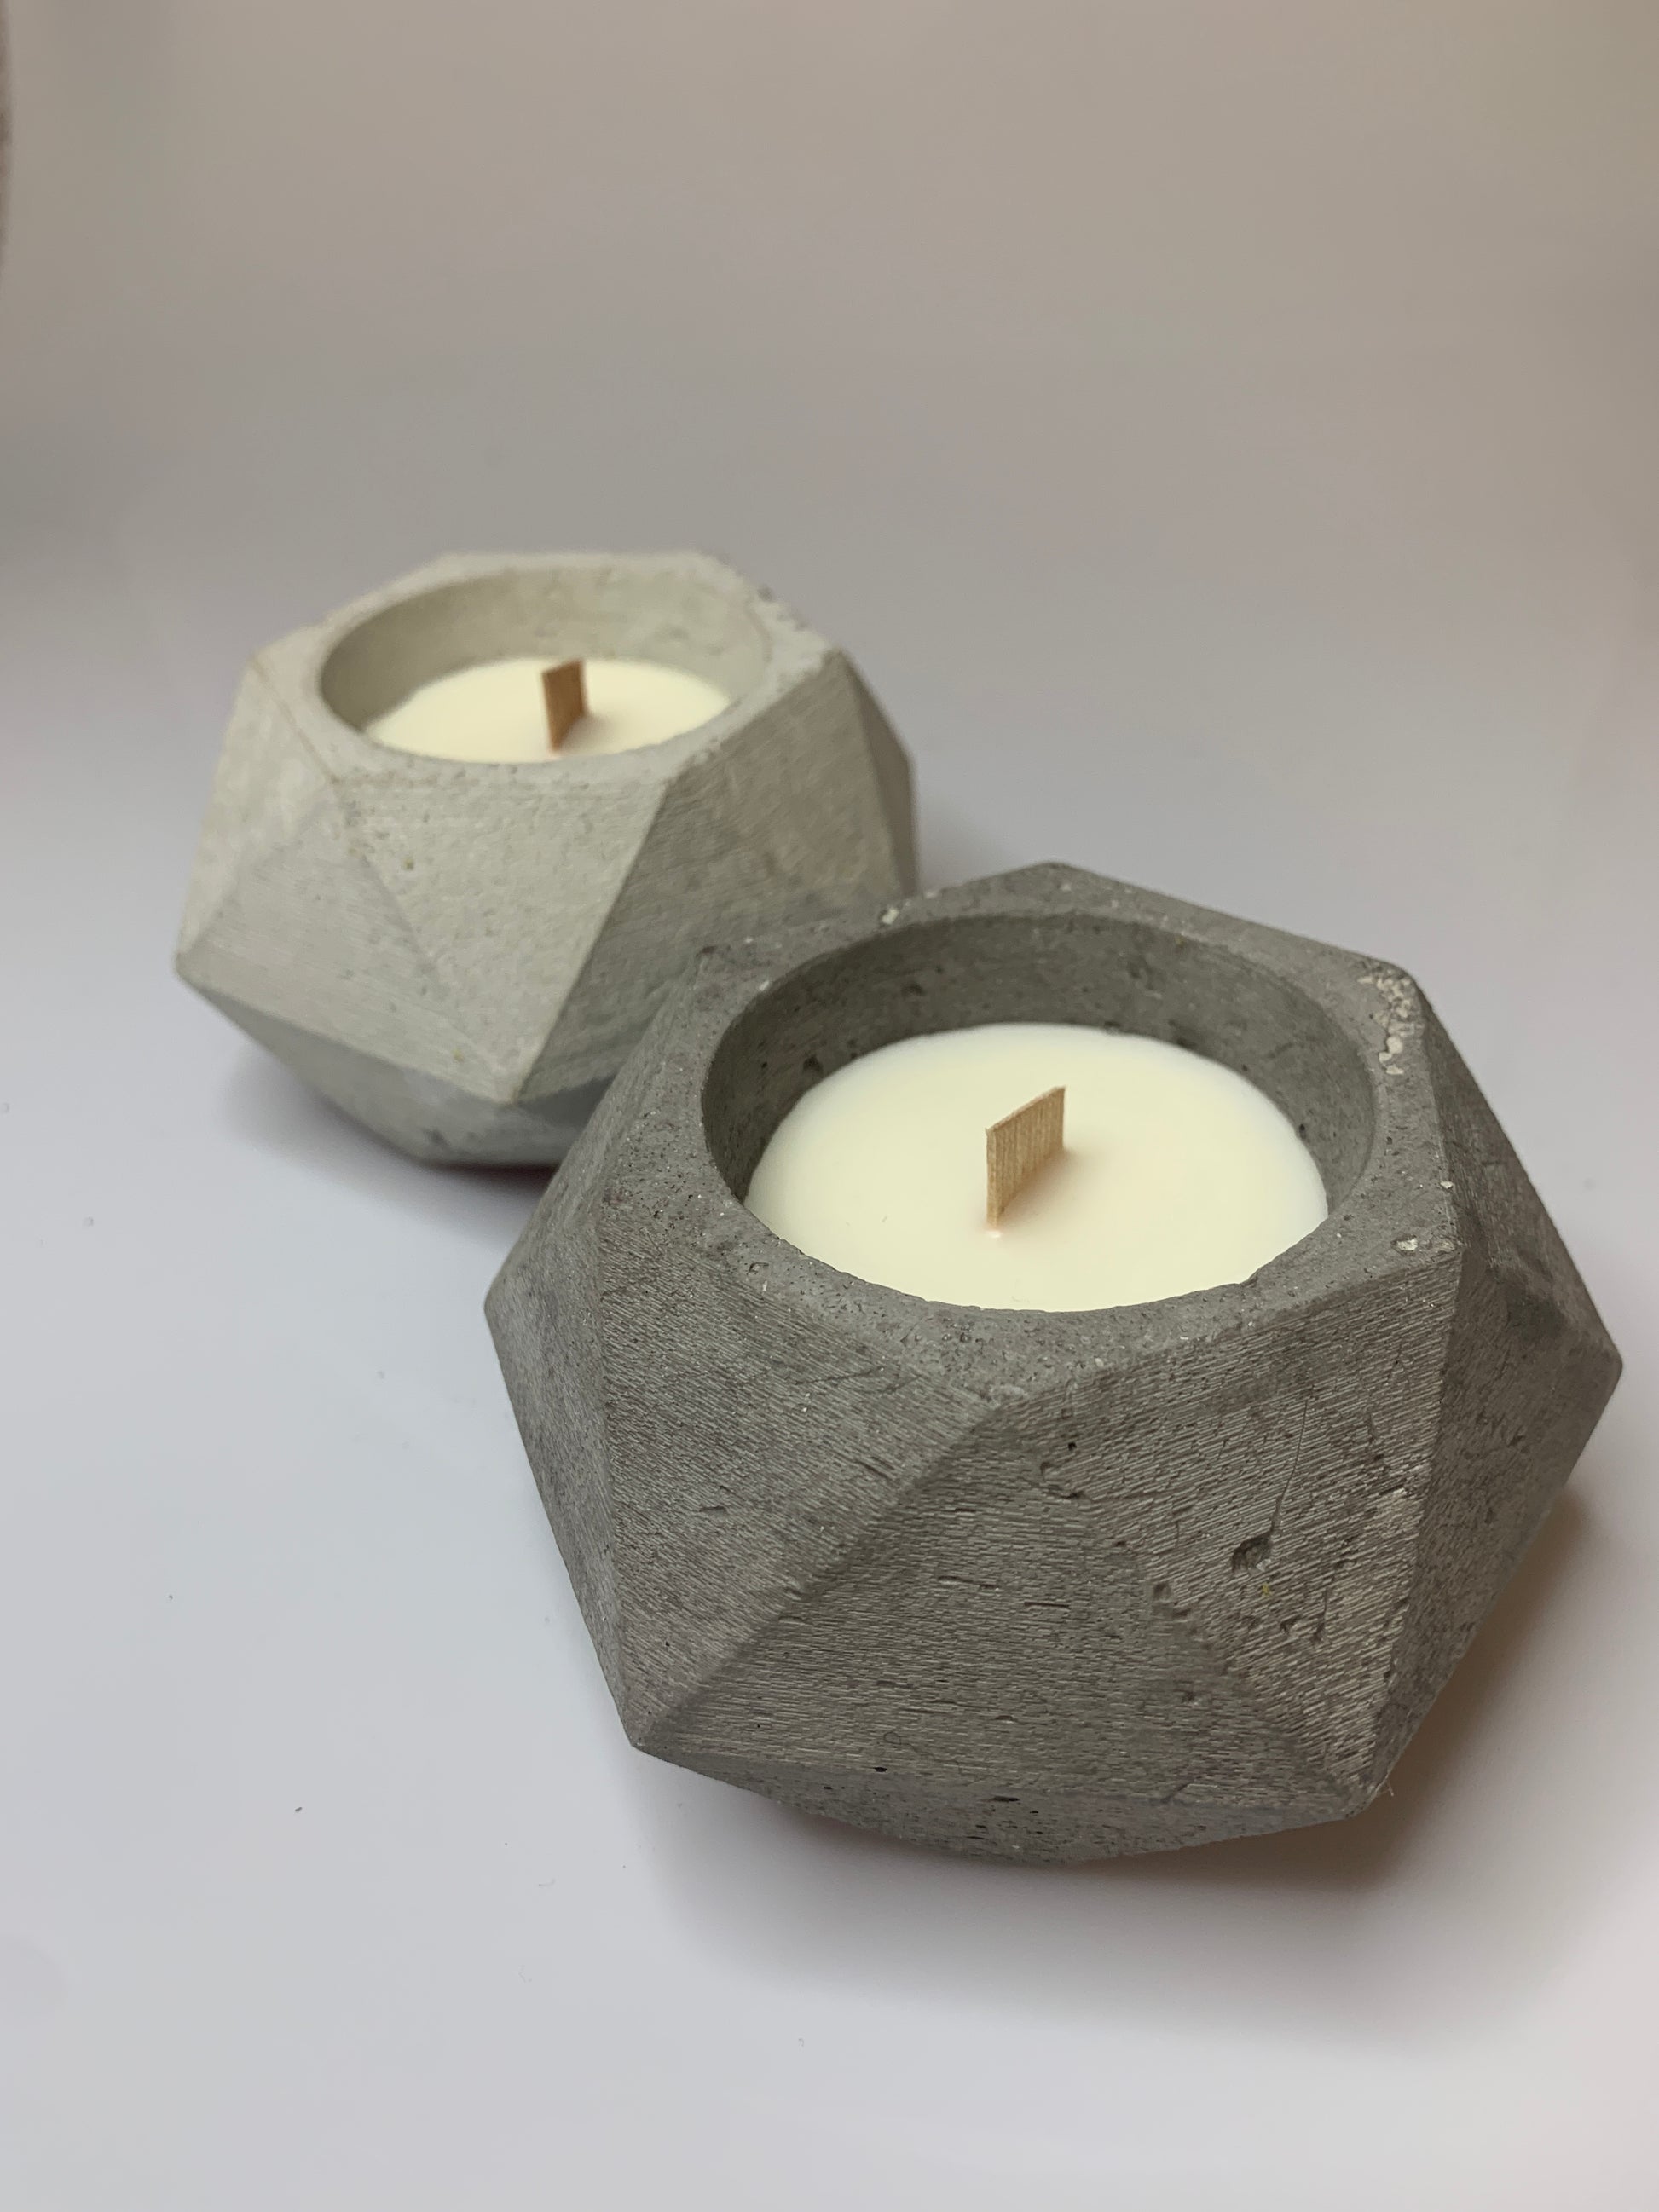 candela in cemento e cera di soia profumata con oli essenziali naturali colori grigio e grigio scuro